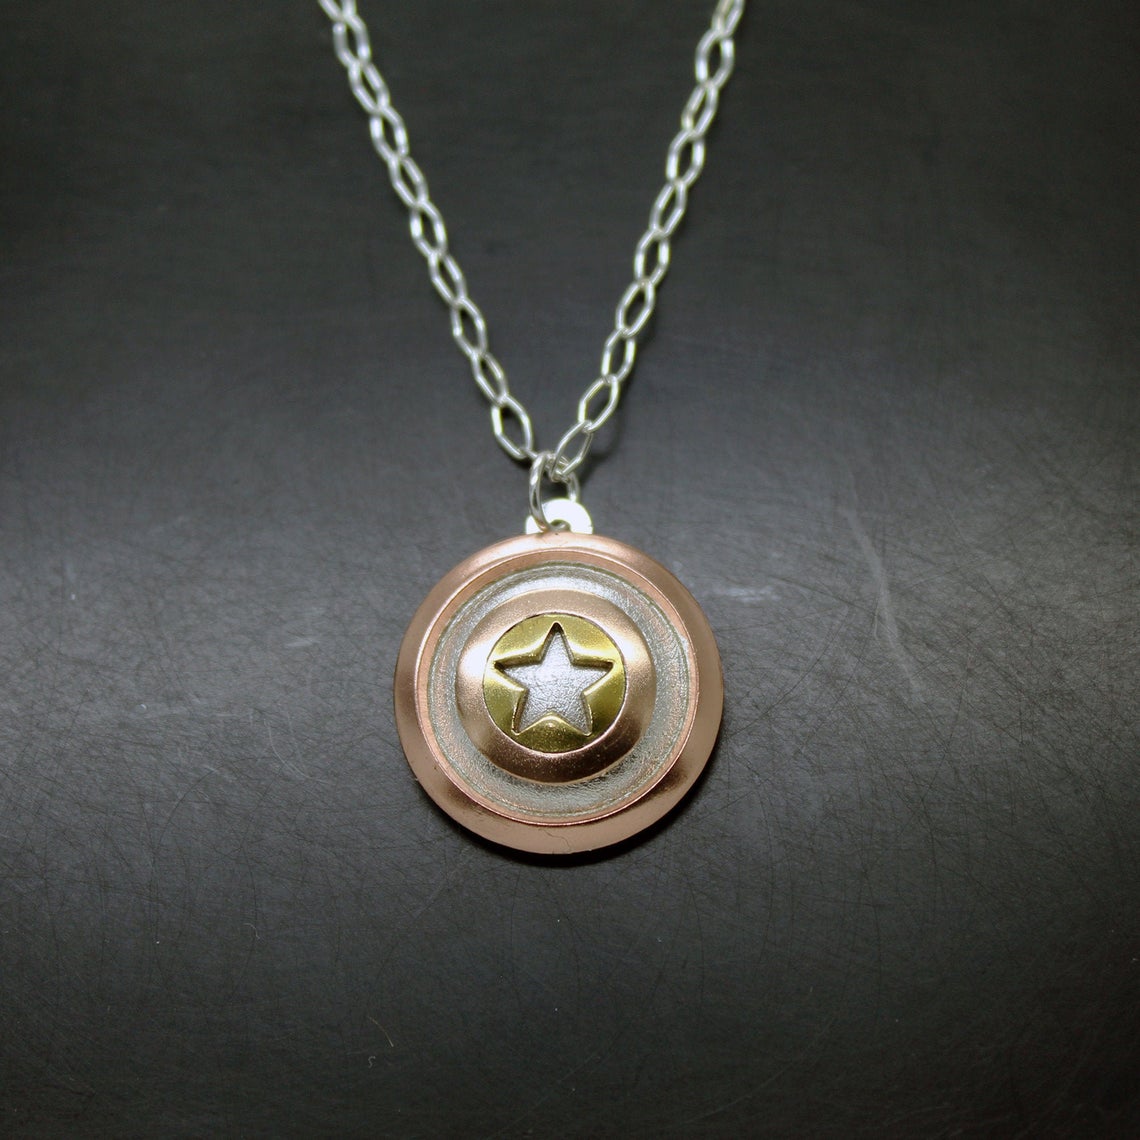 Captain America shield pendant in 925 silver, brass and copper